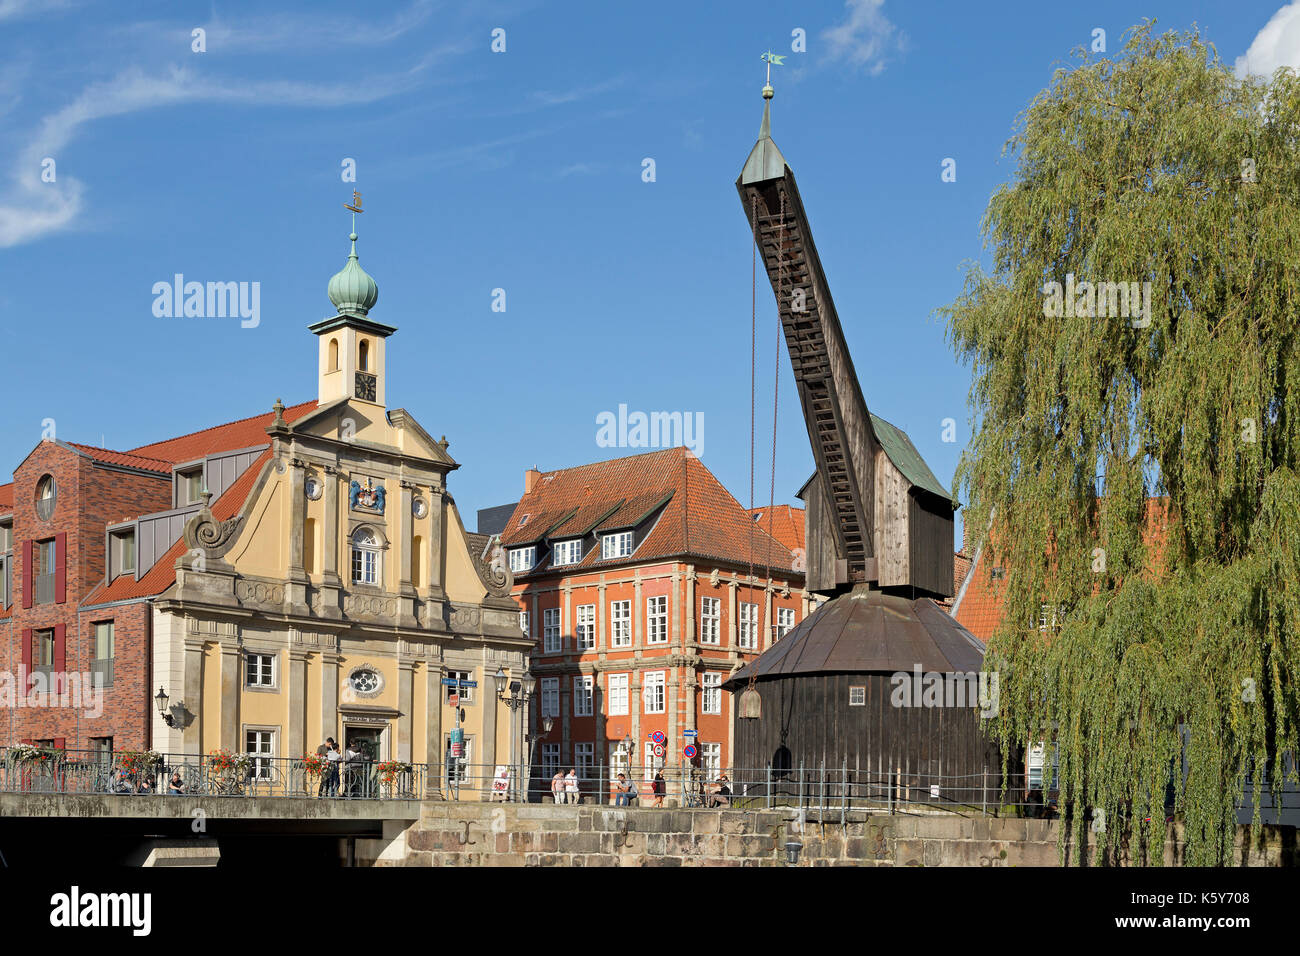 Hotel Altes Kaufhaus und treadwheel Kran, der alte Hafen, Lüneburg, Niedersachsen, Deutschland Stockfoto